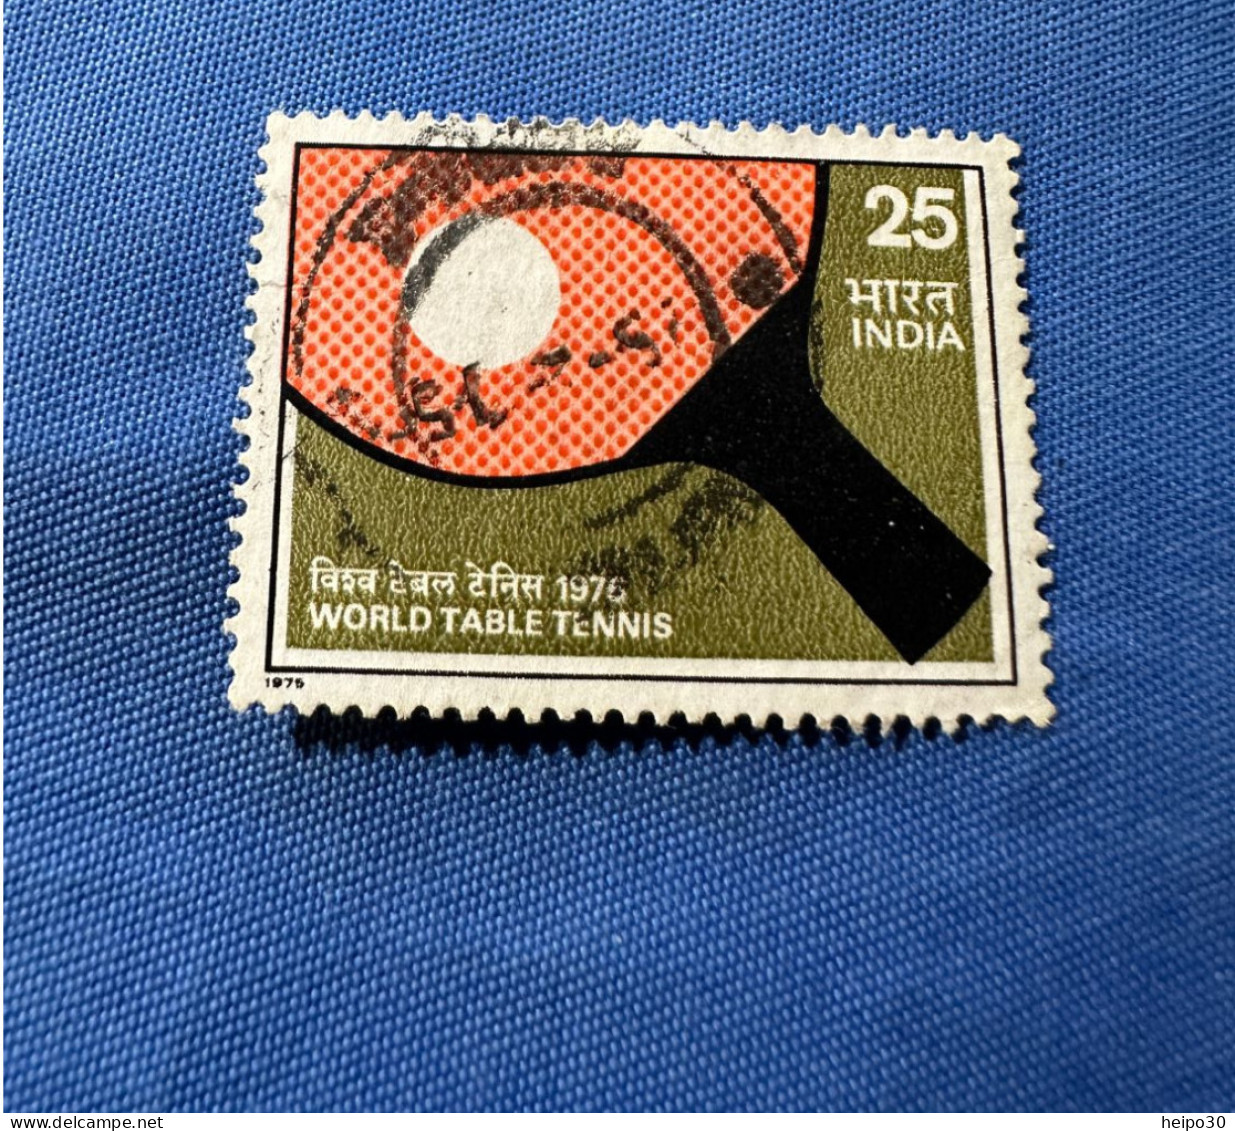 India 1975 Michel 619 Tischtennisweltmeisterschaft - Used Stamps